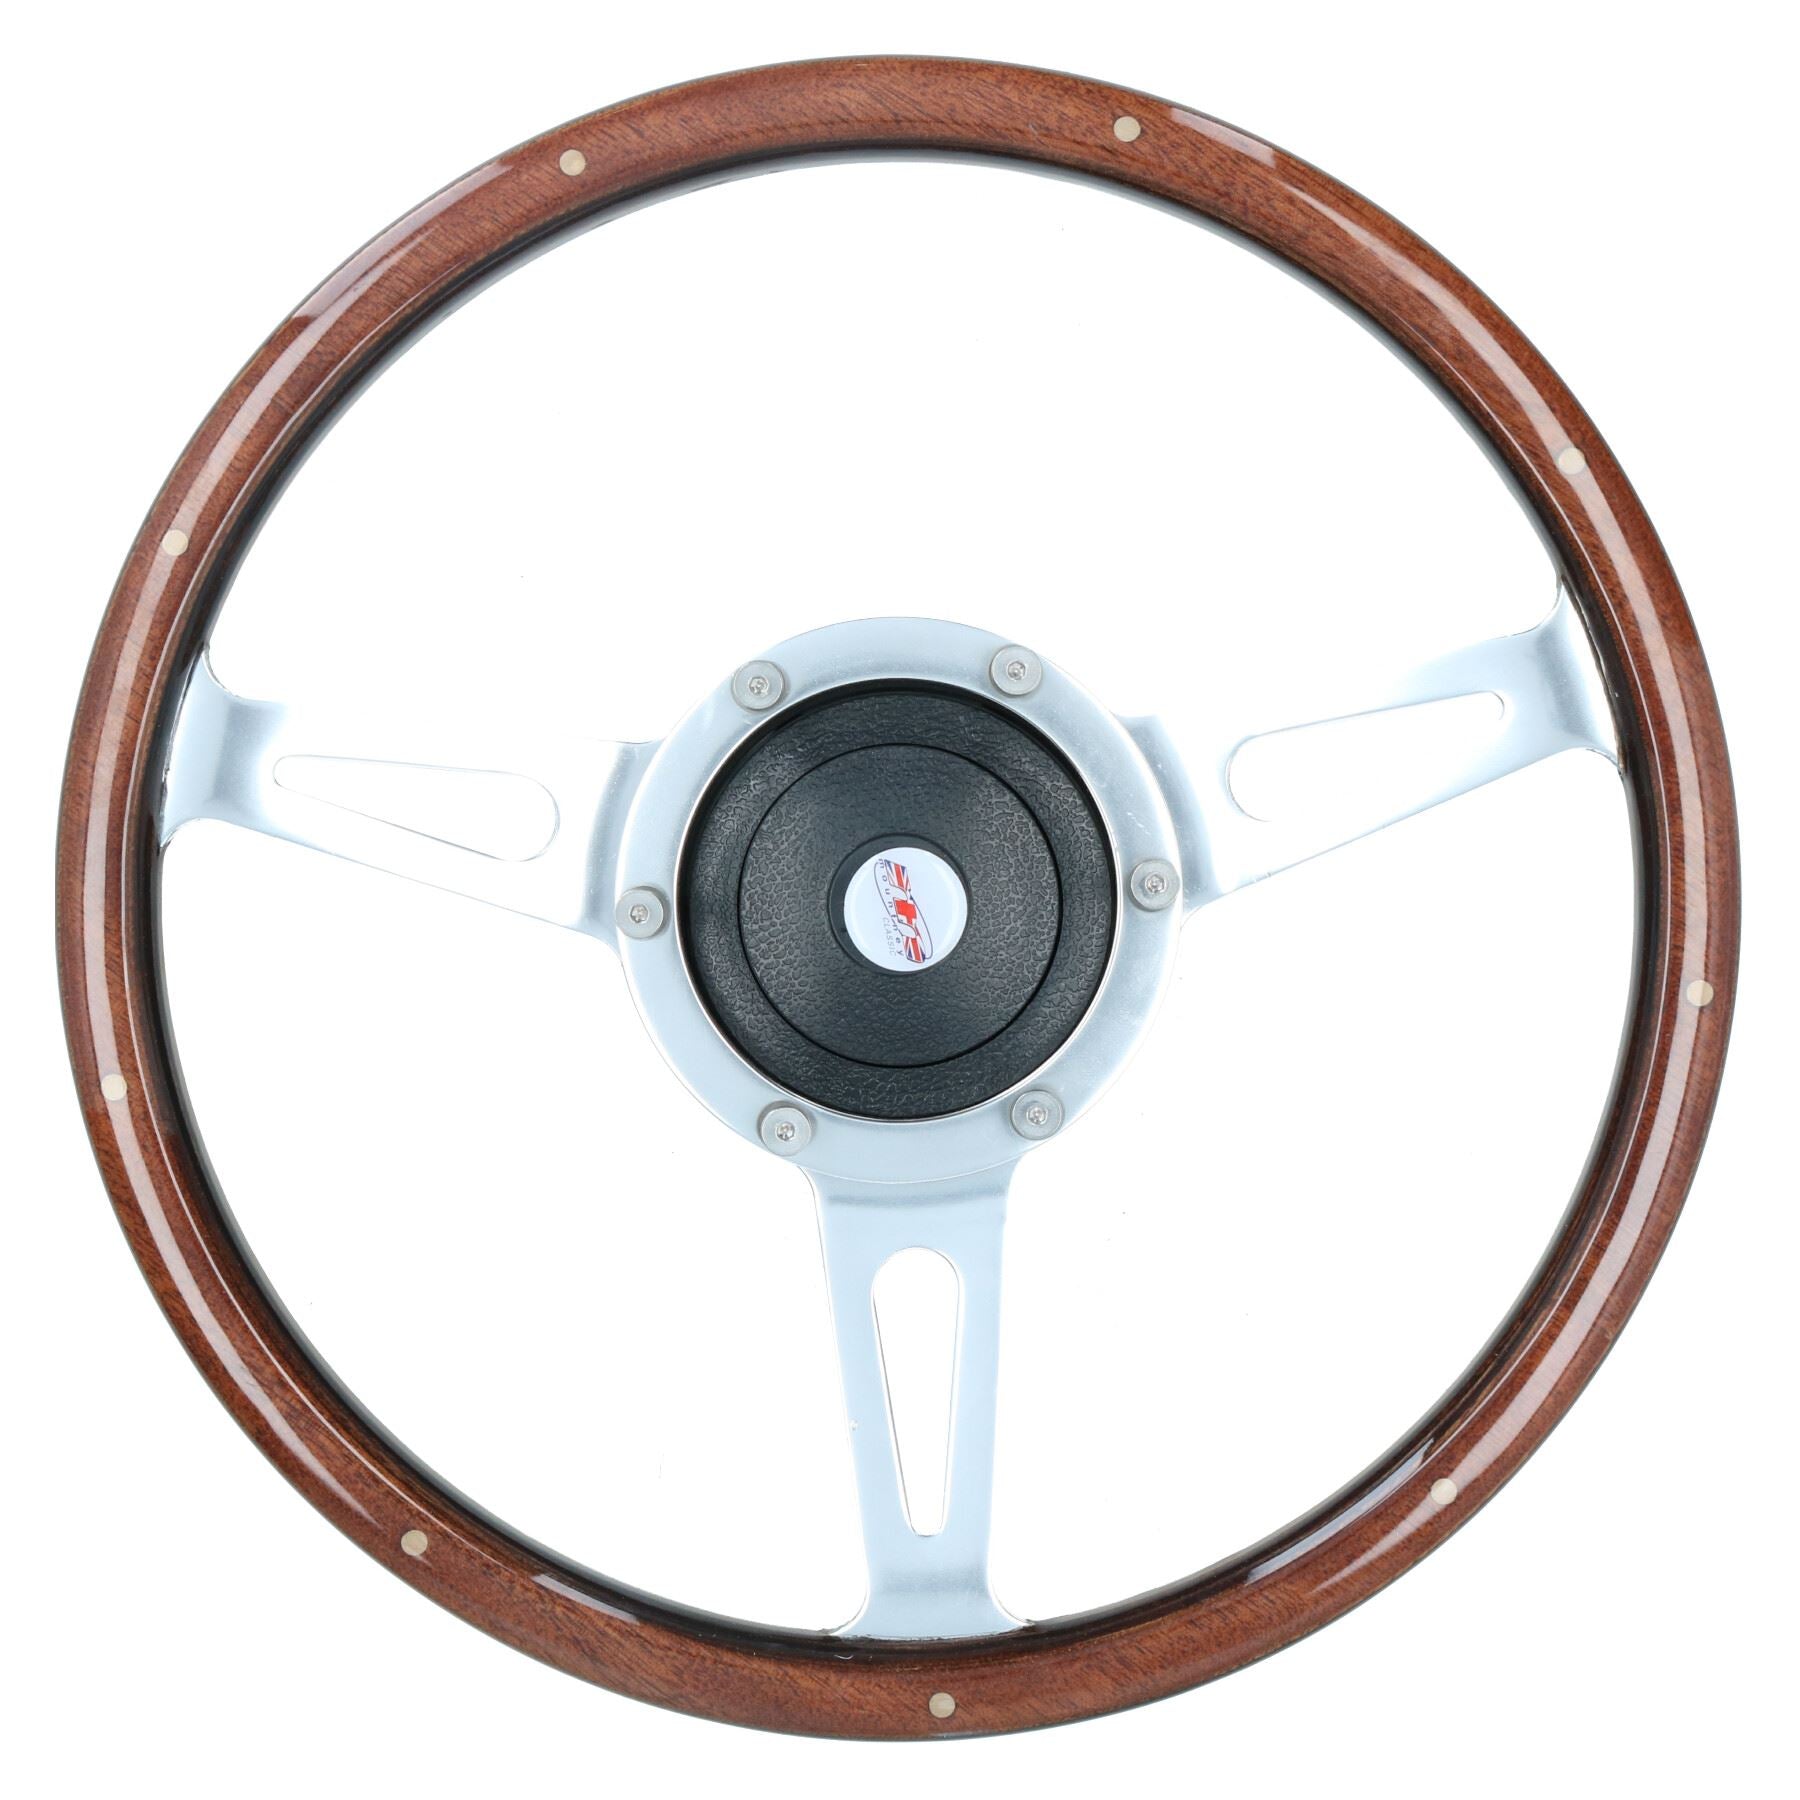 Woodrim Steering Wheel & Boss to fit Austin Leyland Morris Metro 111 & 114 All Years